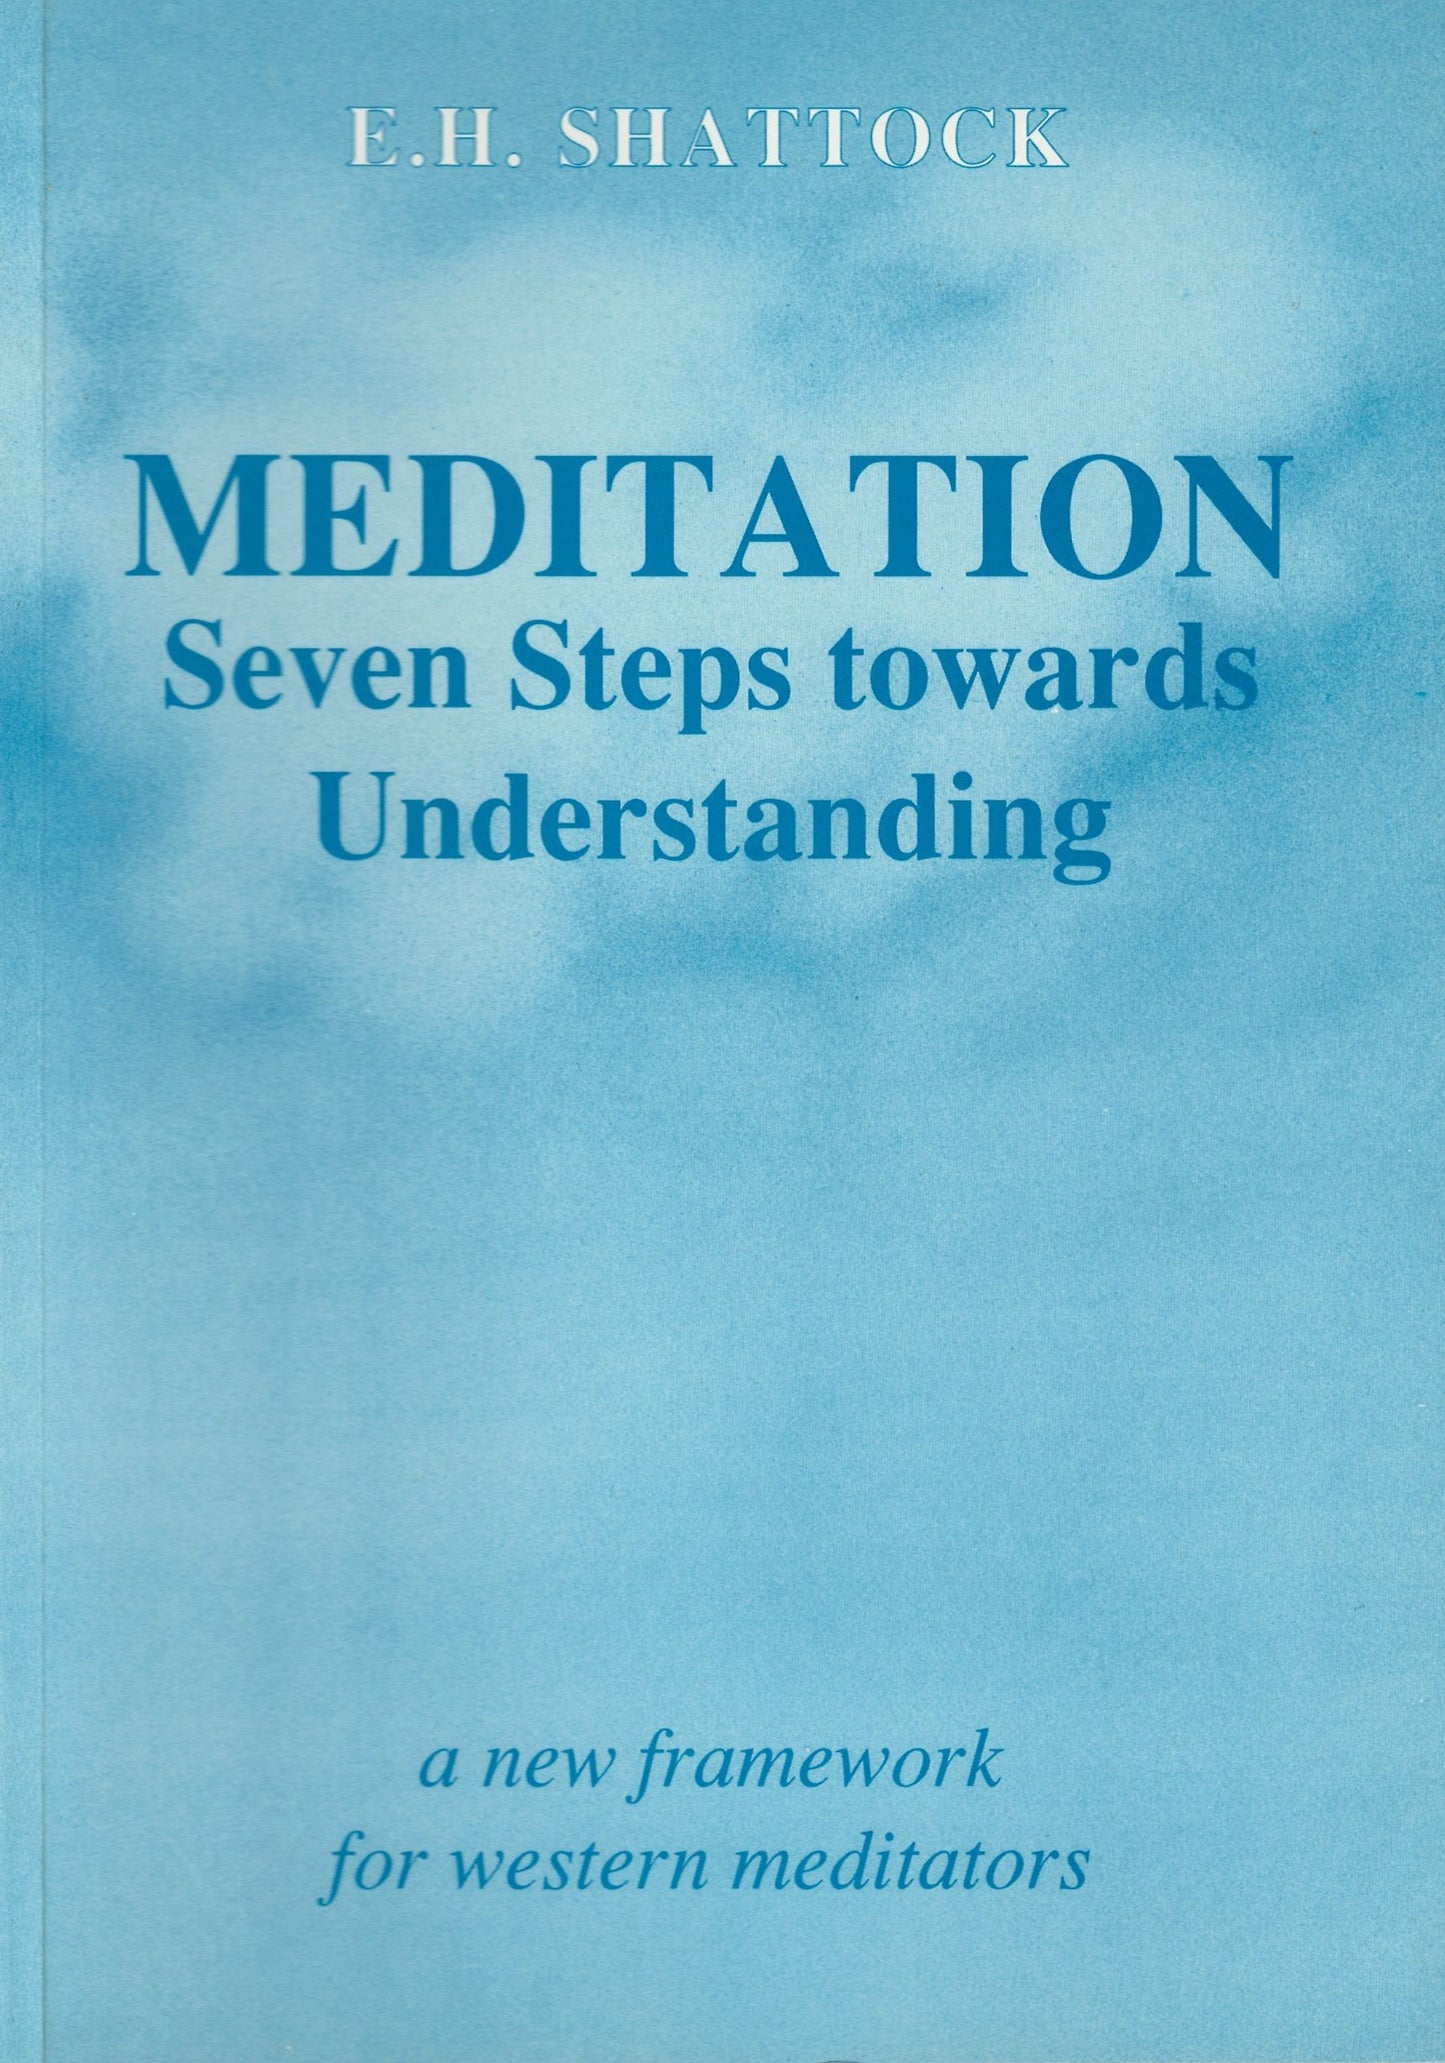 Meditation - Seven steps towards understanding